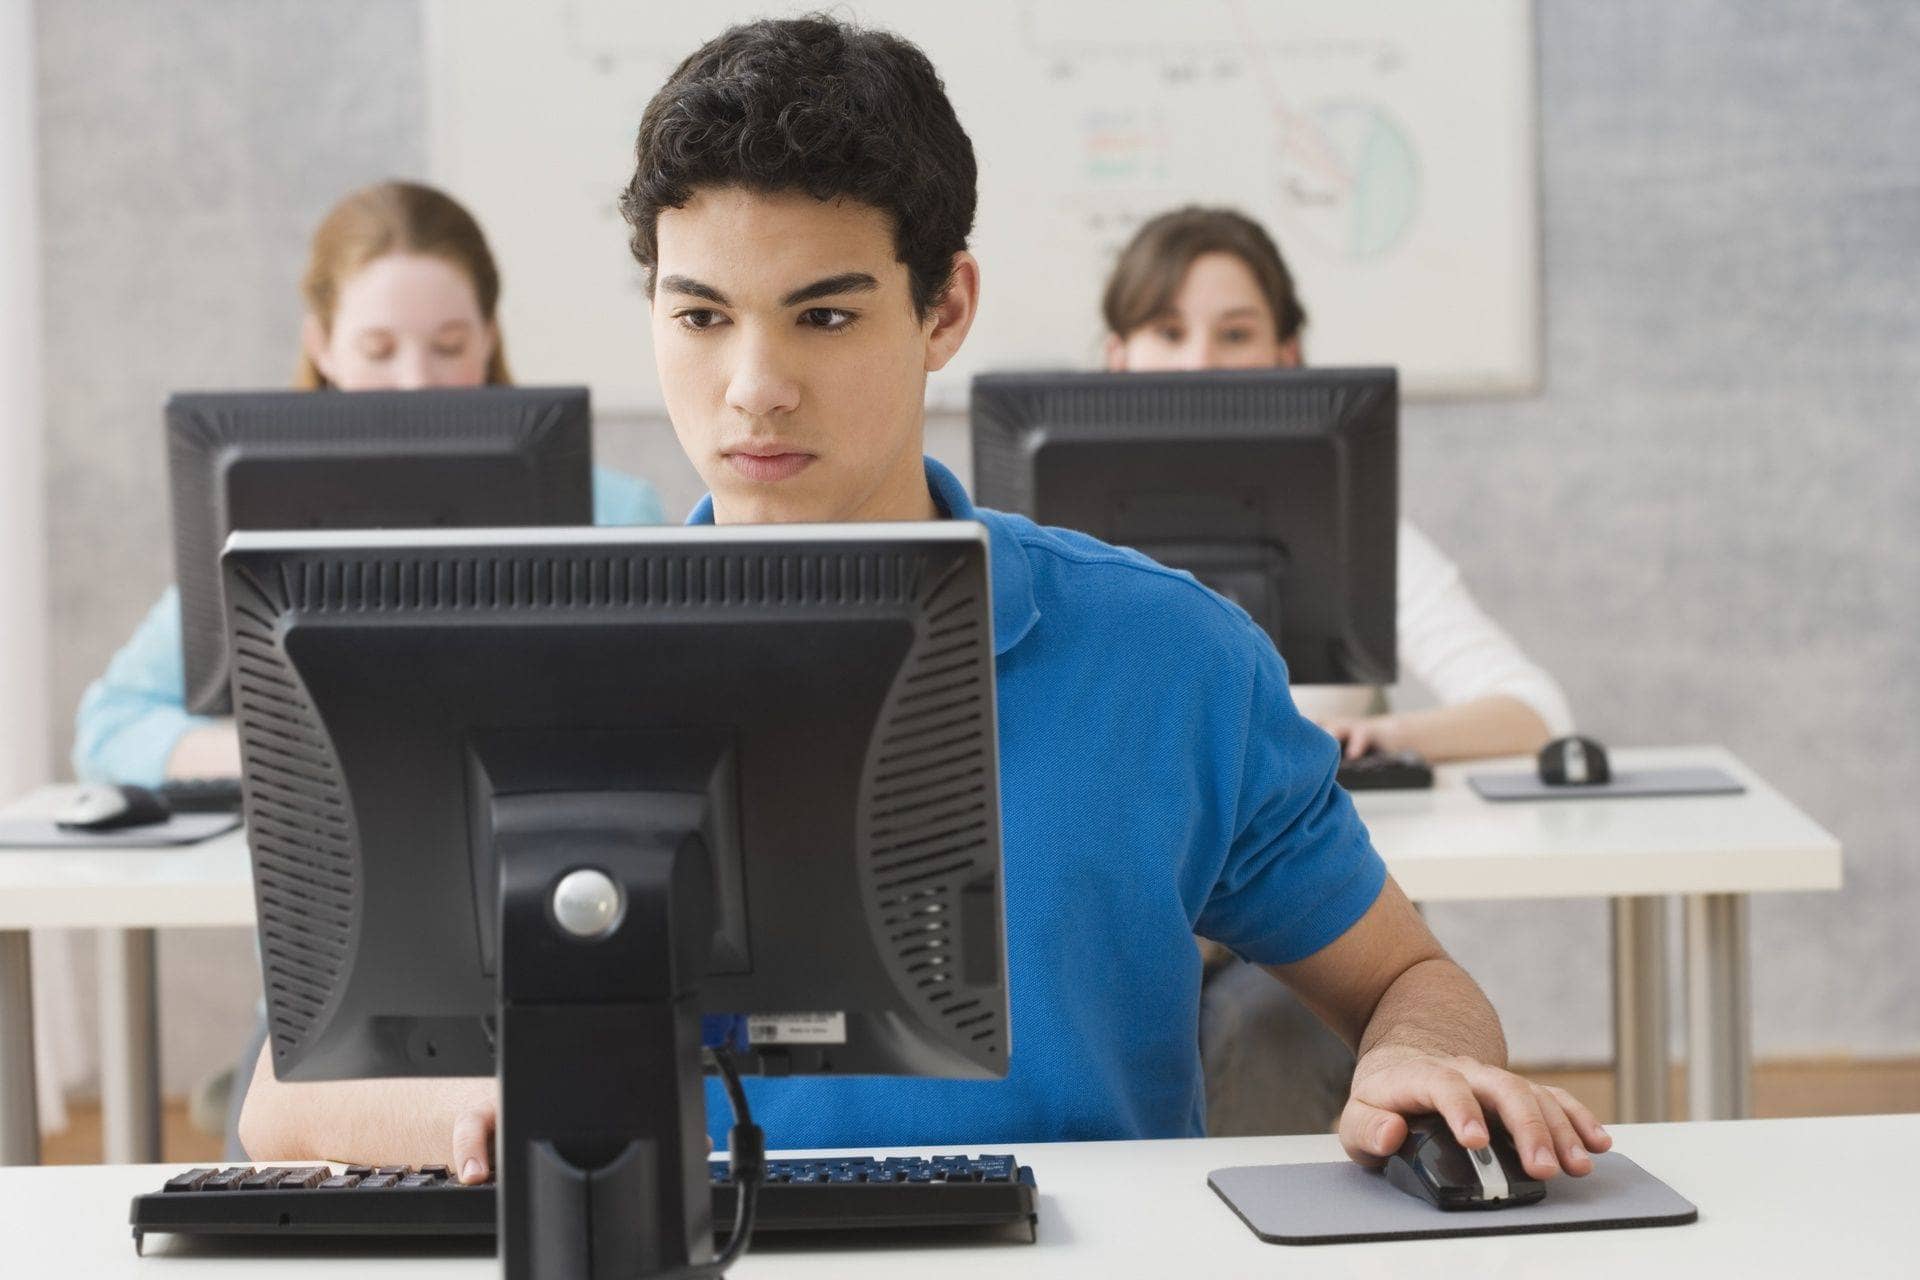 Соберу любую информацию. Человек за компьютером. Студент за ПК. Компьютер и человек. Перед компьютером.